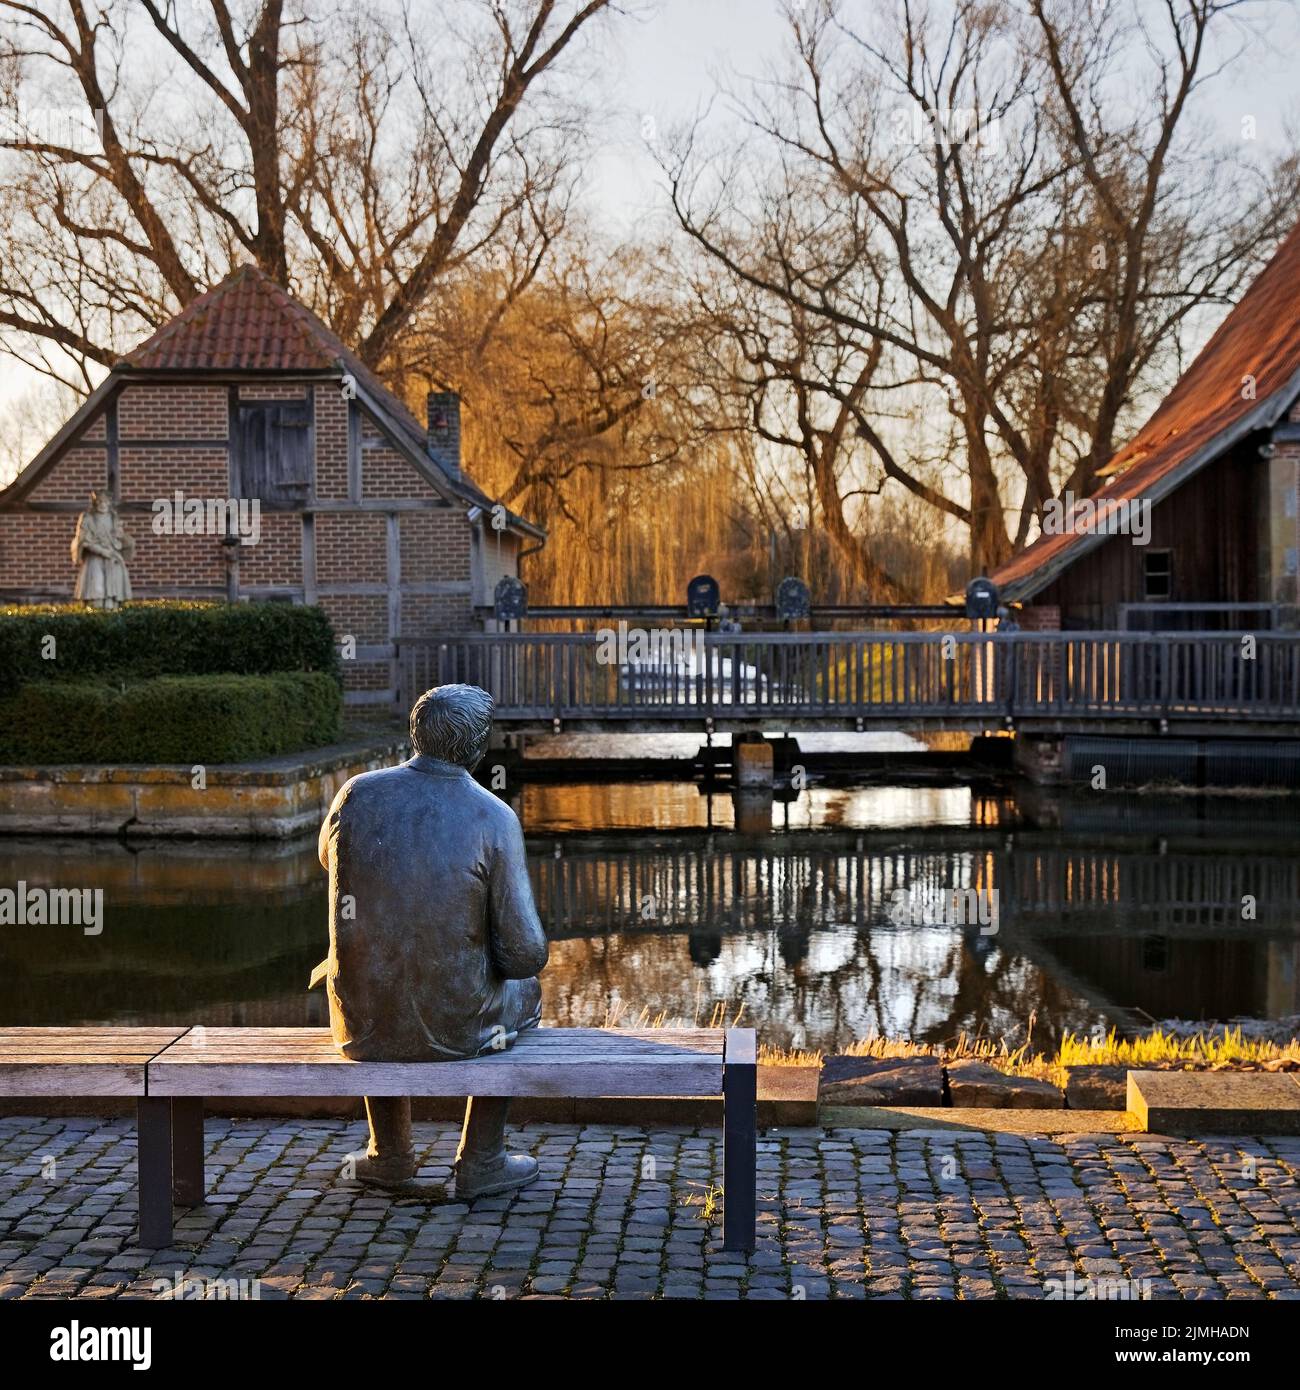 Sculpture en bronze du poète local Paul Evena au moulin à eau de Heek-Nienborg, Heek, Allemagne Banque D'Images